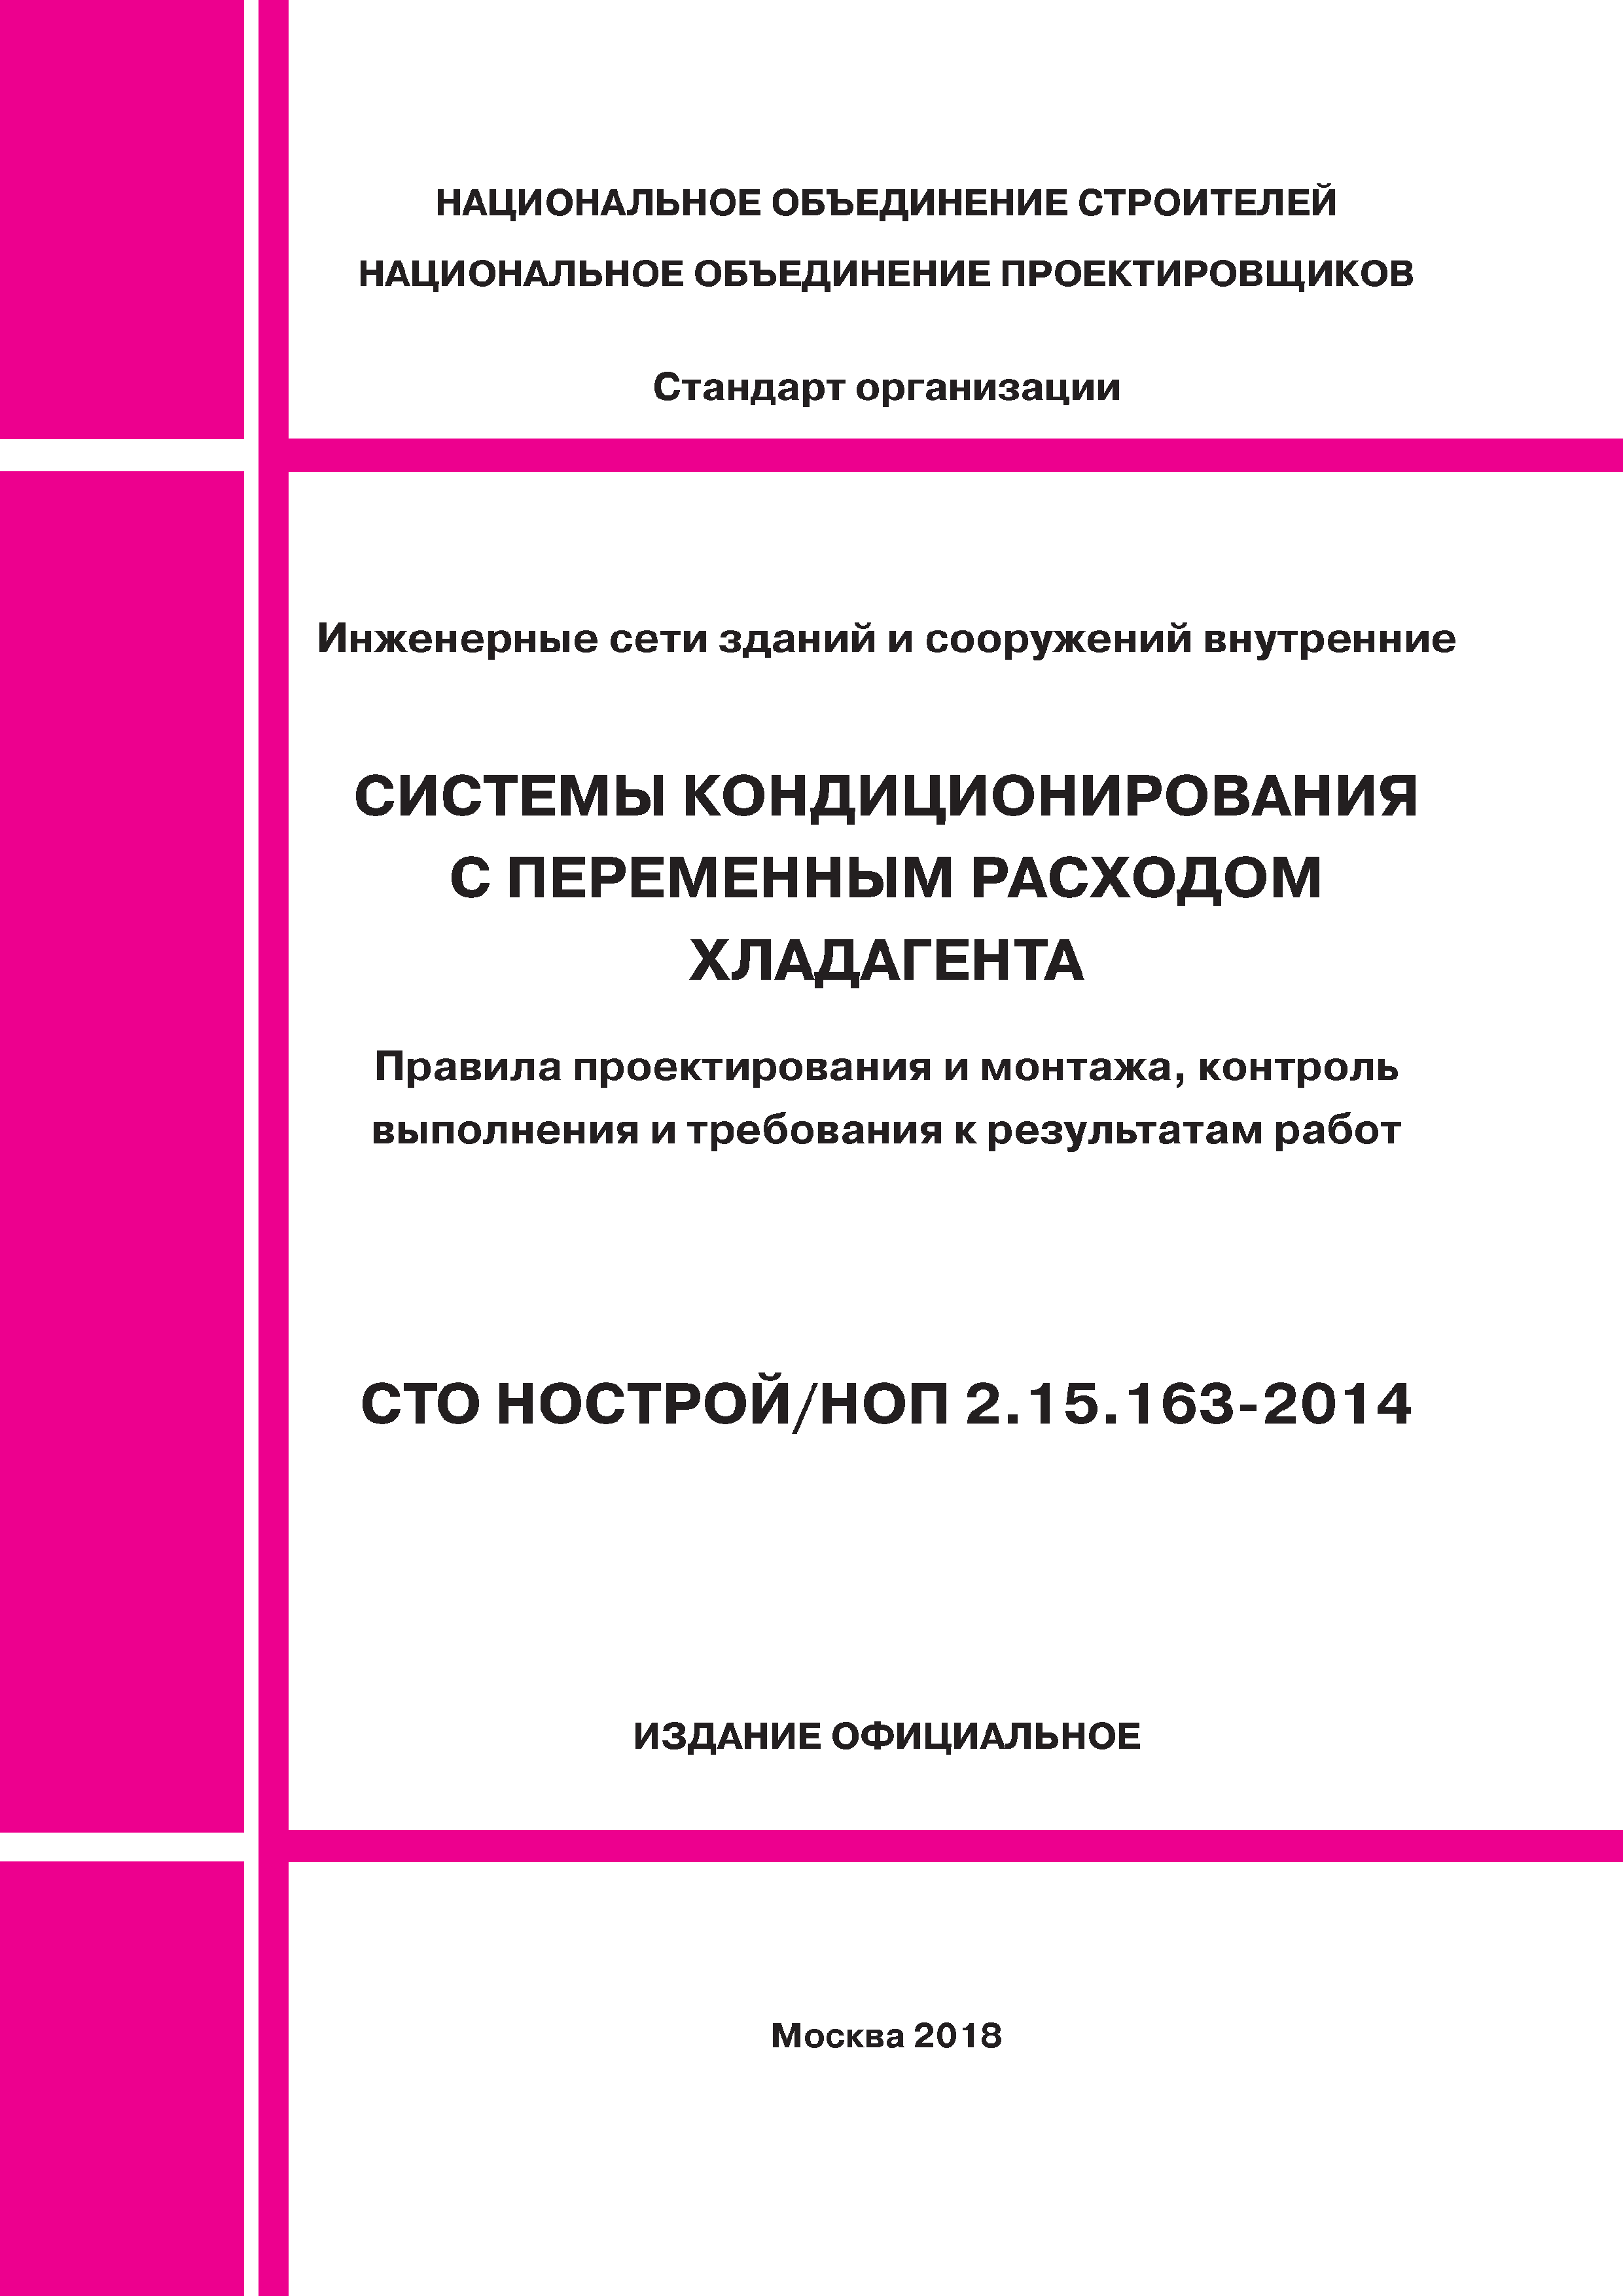 СТО НОСТРОЙ/НОП 2.15.163-2014